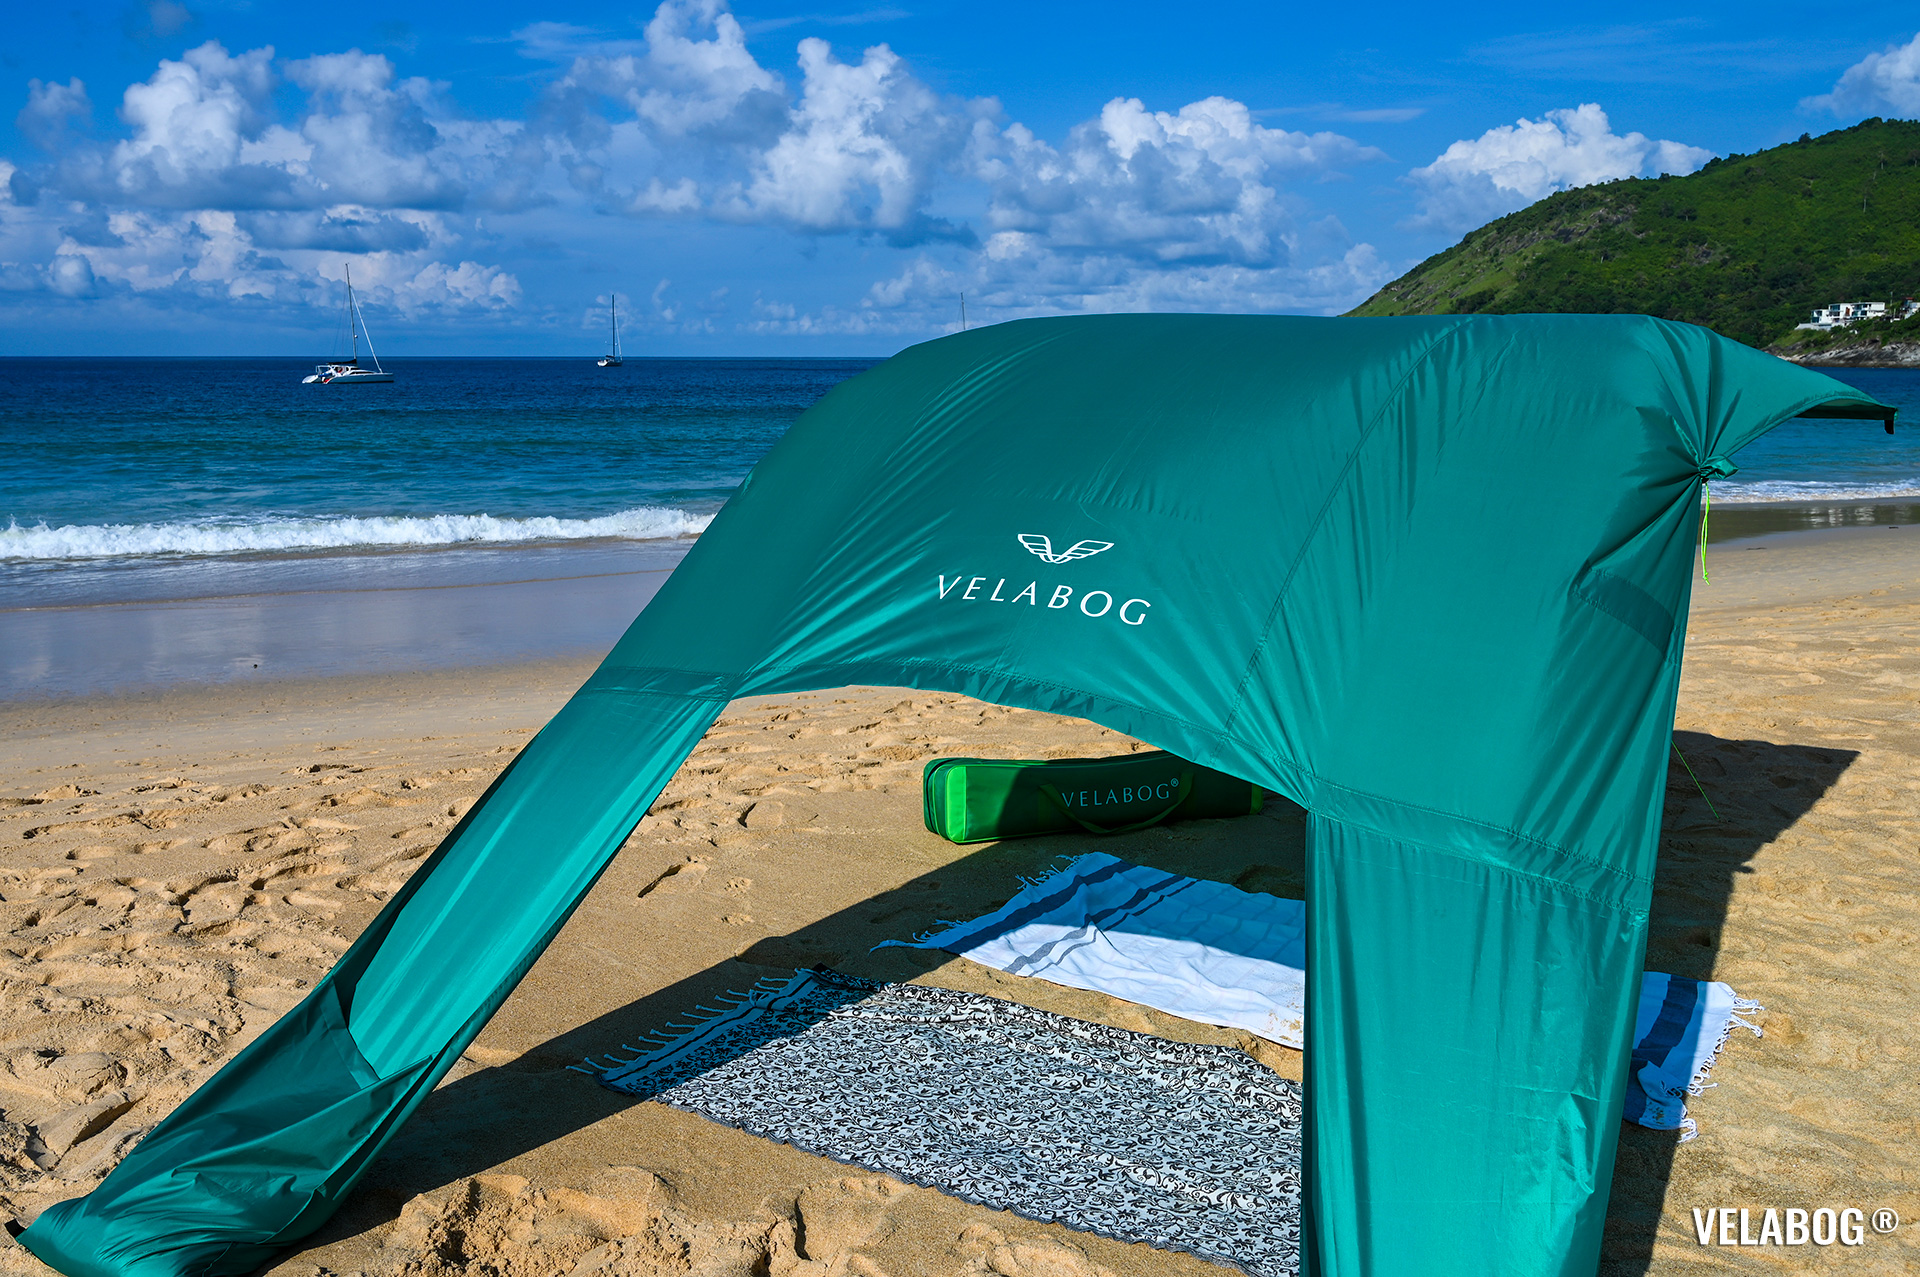 Солнечный парус Velabog «Breeze» зелёный. Лучшее и самое стильное укрытие от солнца на пляже. Вариант установки при слабом или сильном ветре. Вид сзади, детали.